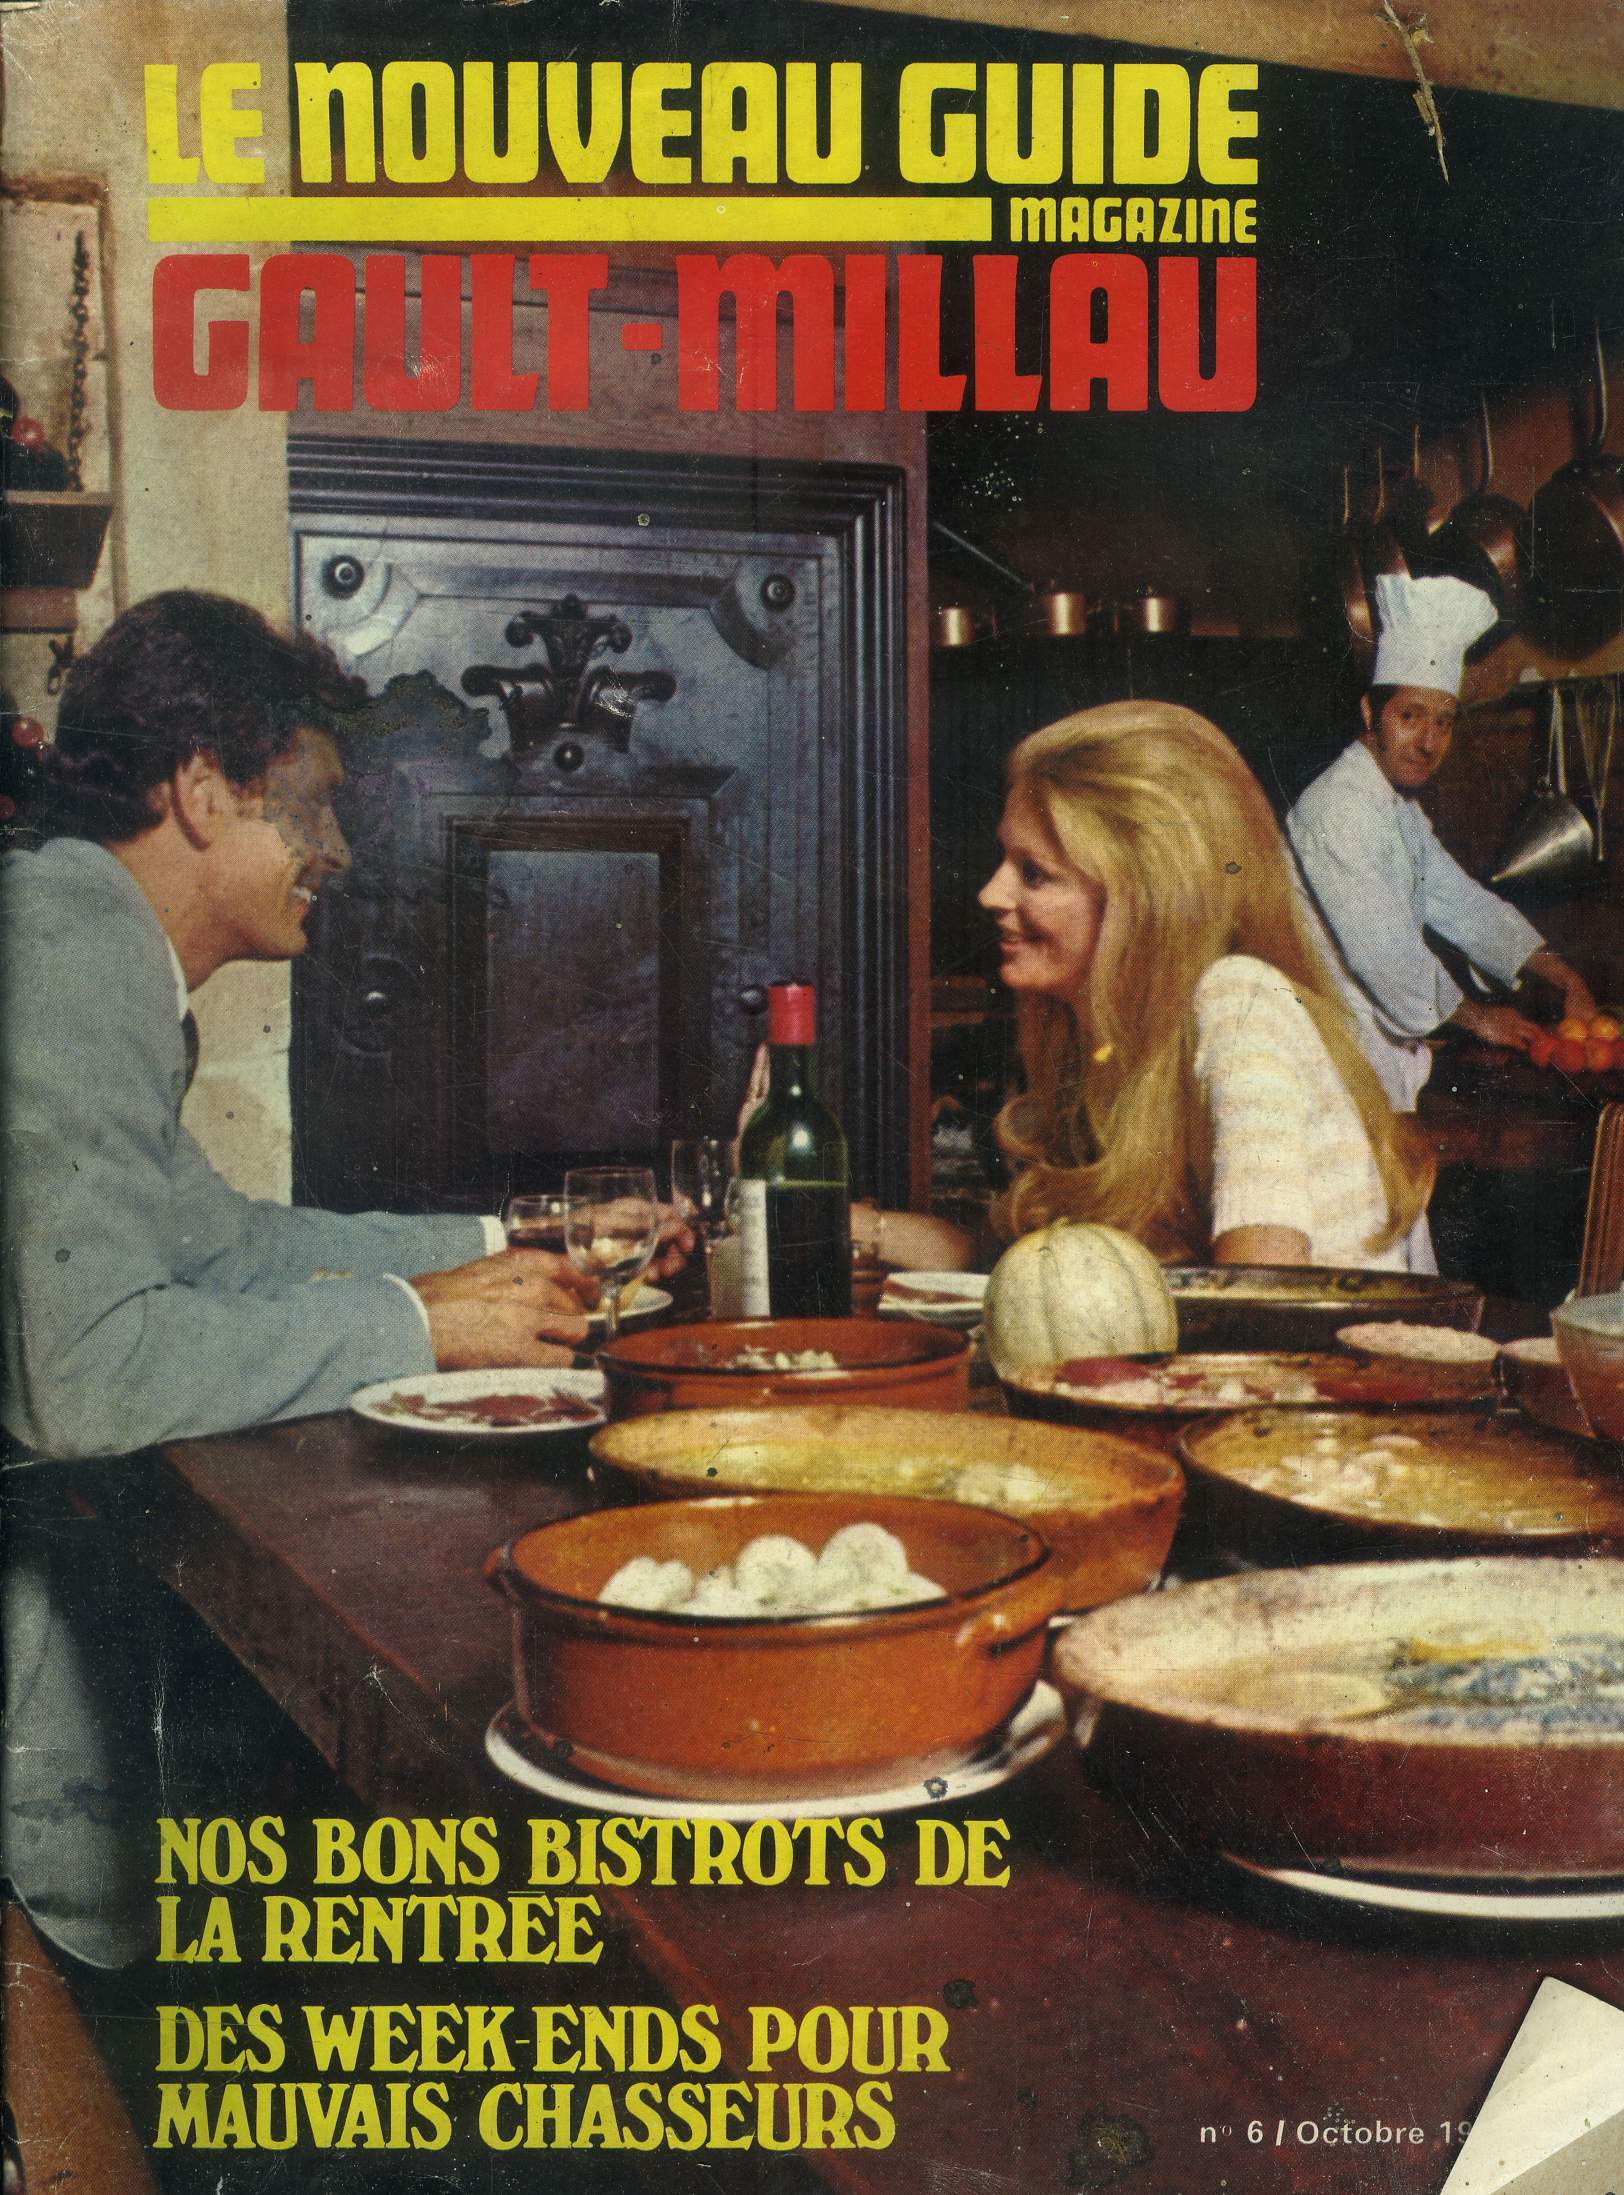 Le nouveau Guide Gault-Millau - Magazine n 6 - Octobre 1969 :